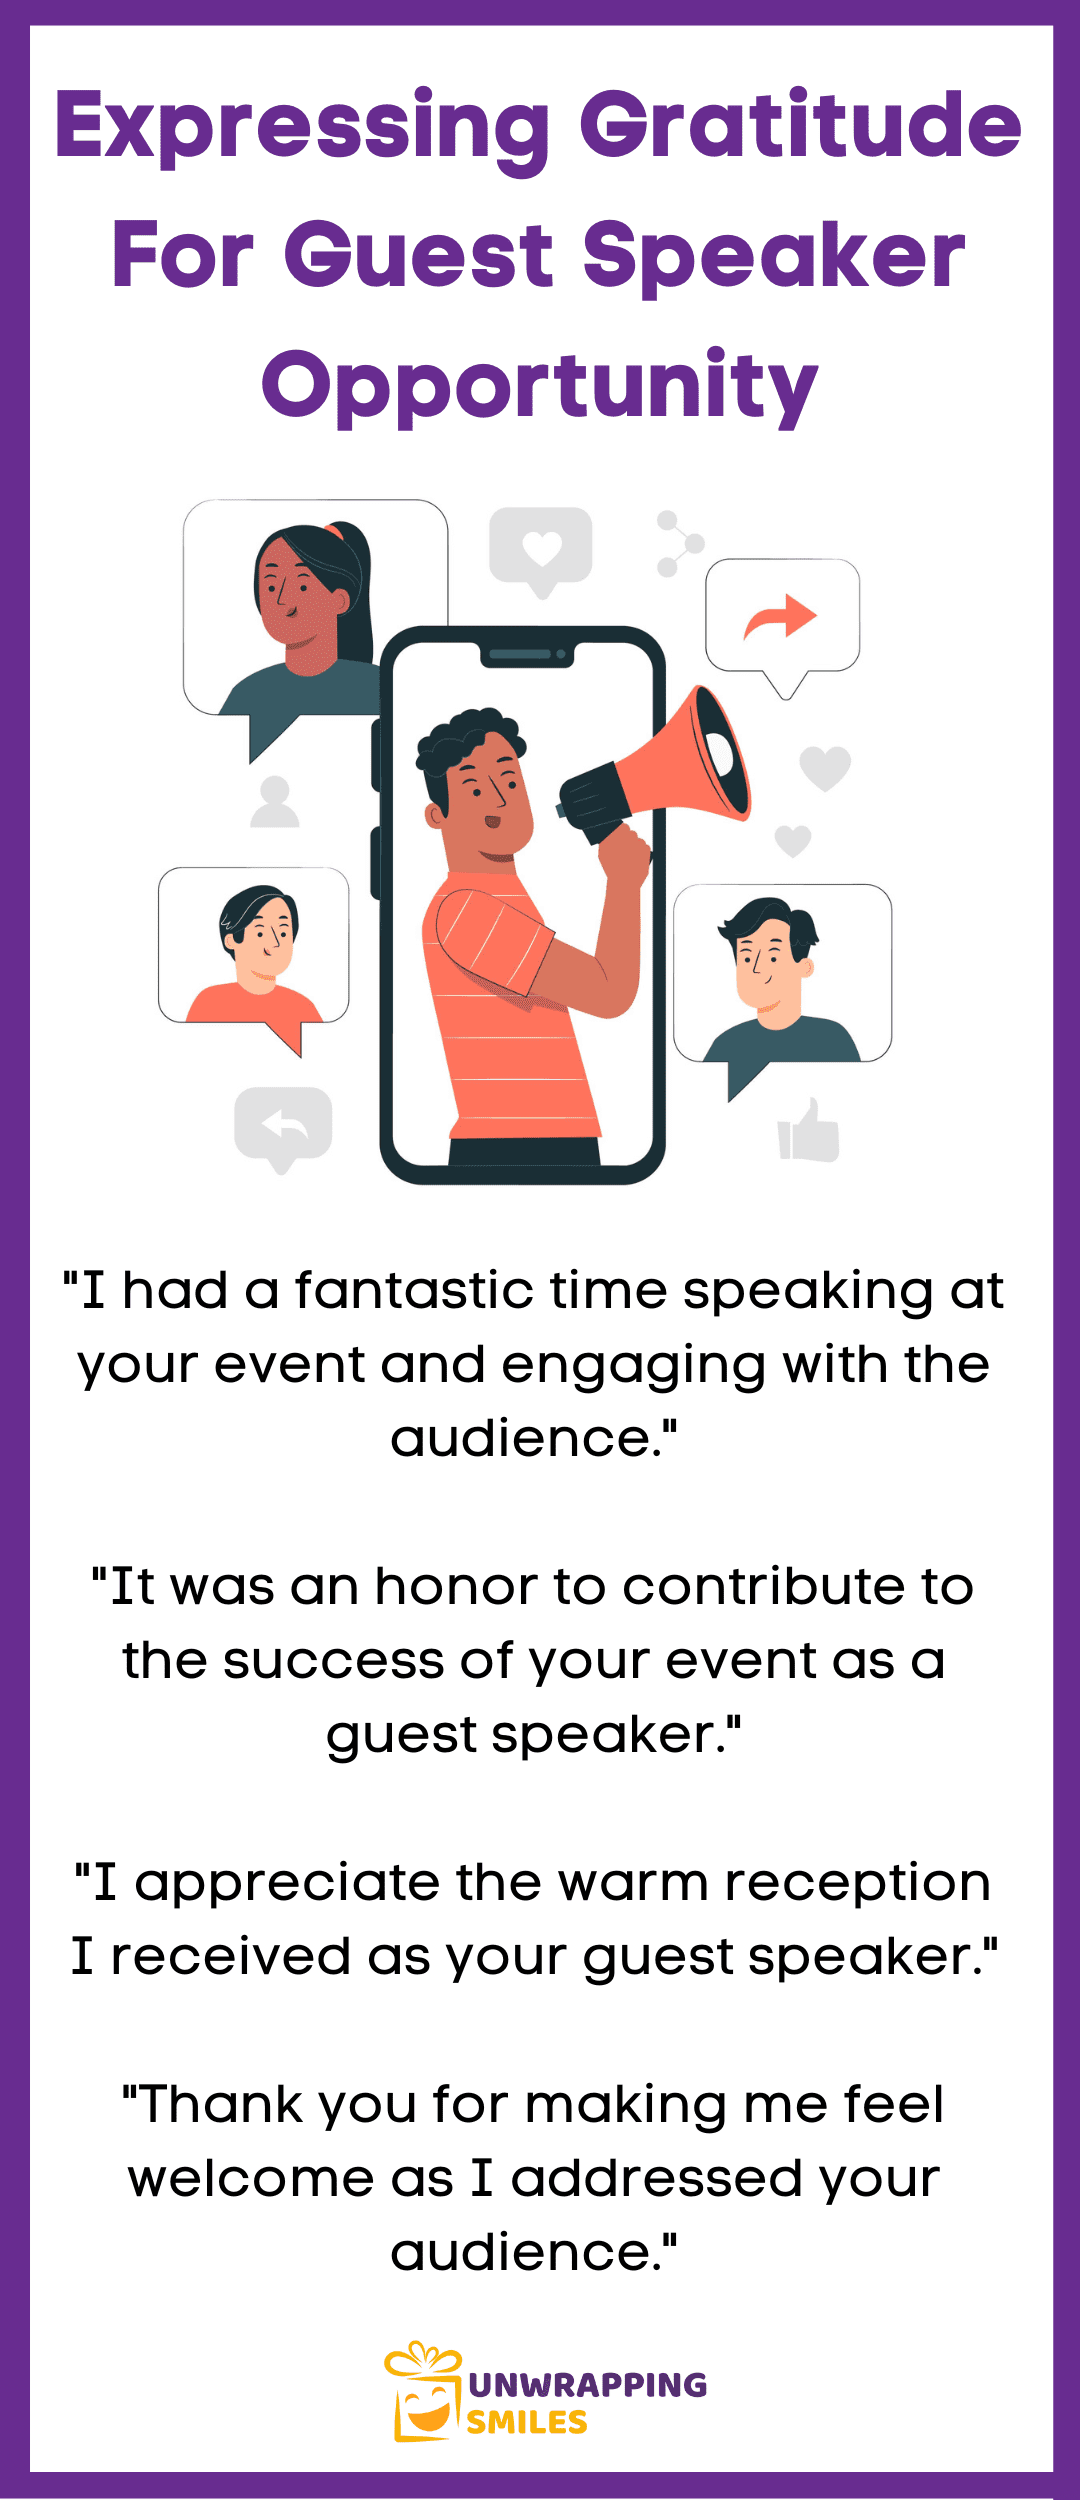 Expressing Gratitude For Guest Speaker Opportunity